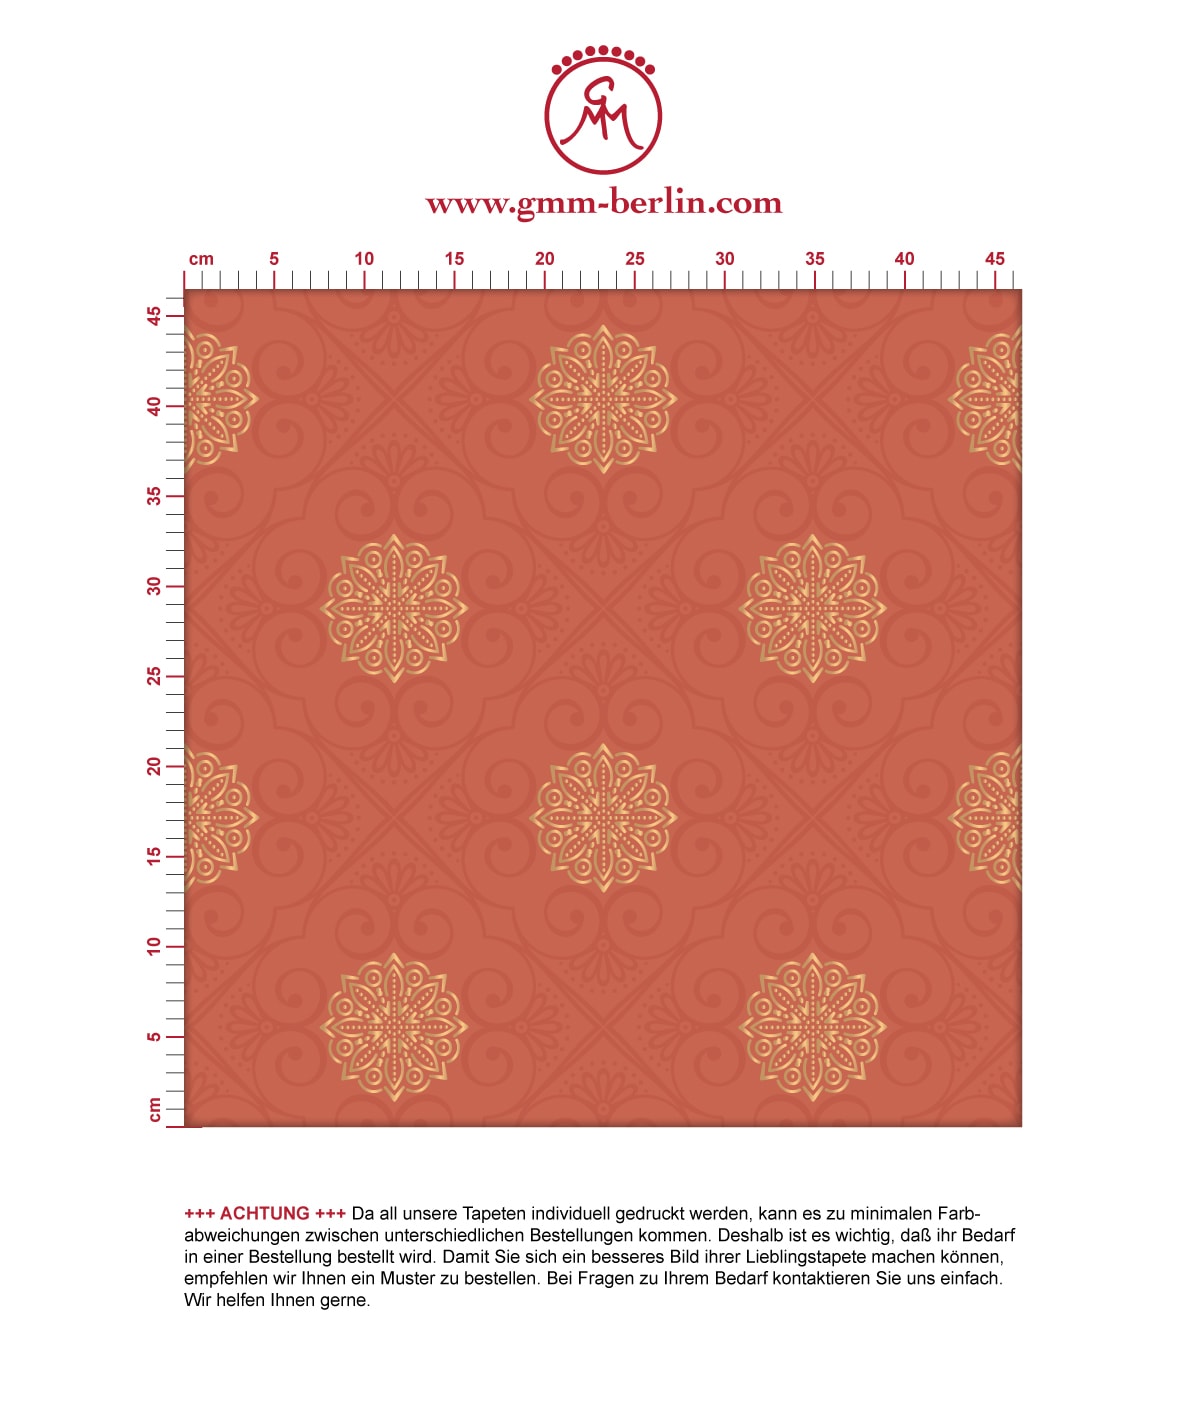 Rote Tapete oriental "Mandarin", rot braune Vlies Tapete Ornamente, elegante Wanddeko für Schlafzimmer. Aus dem GMM-BERLIN.com Sortiment: Schöne Tapeten in der Farbe: rot